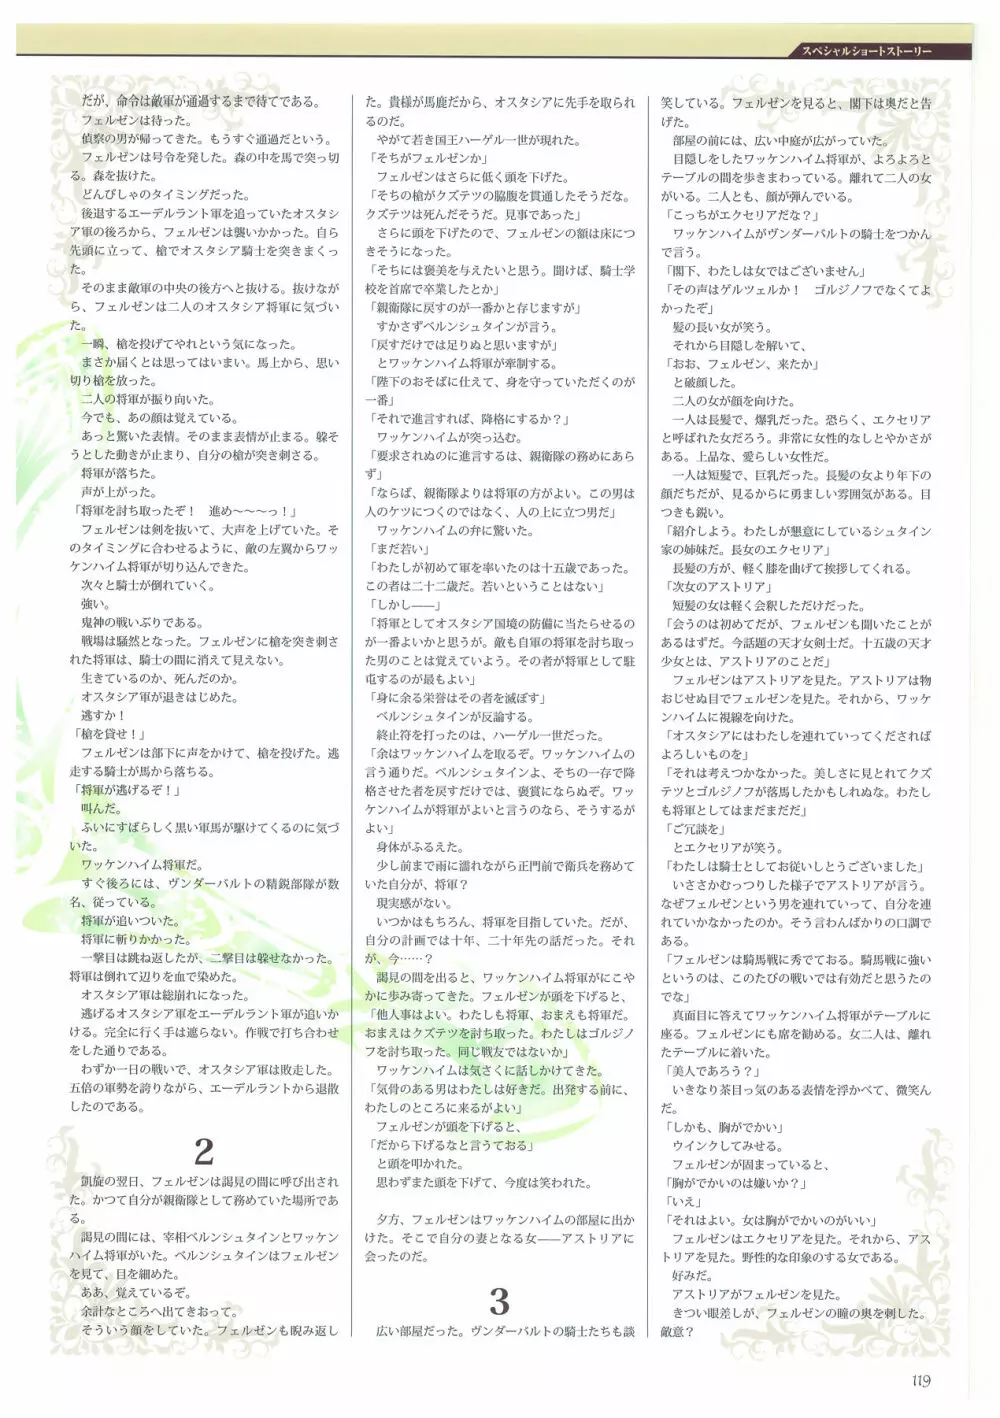 巨乳幻想 -巨乳ファンタジー コンプリート- 119ページ